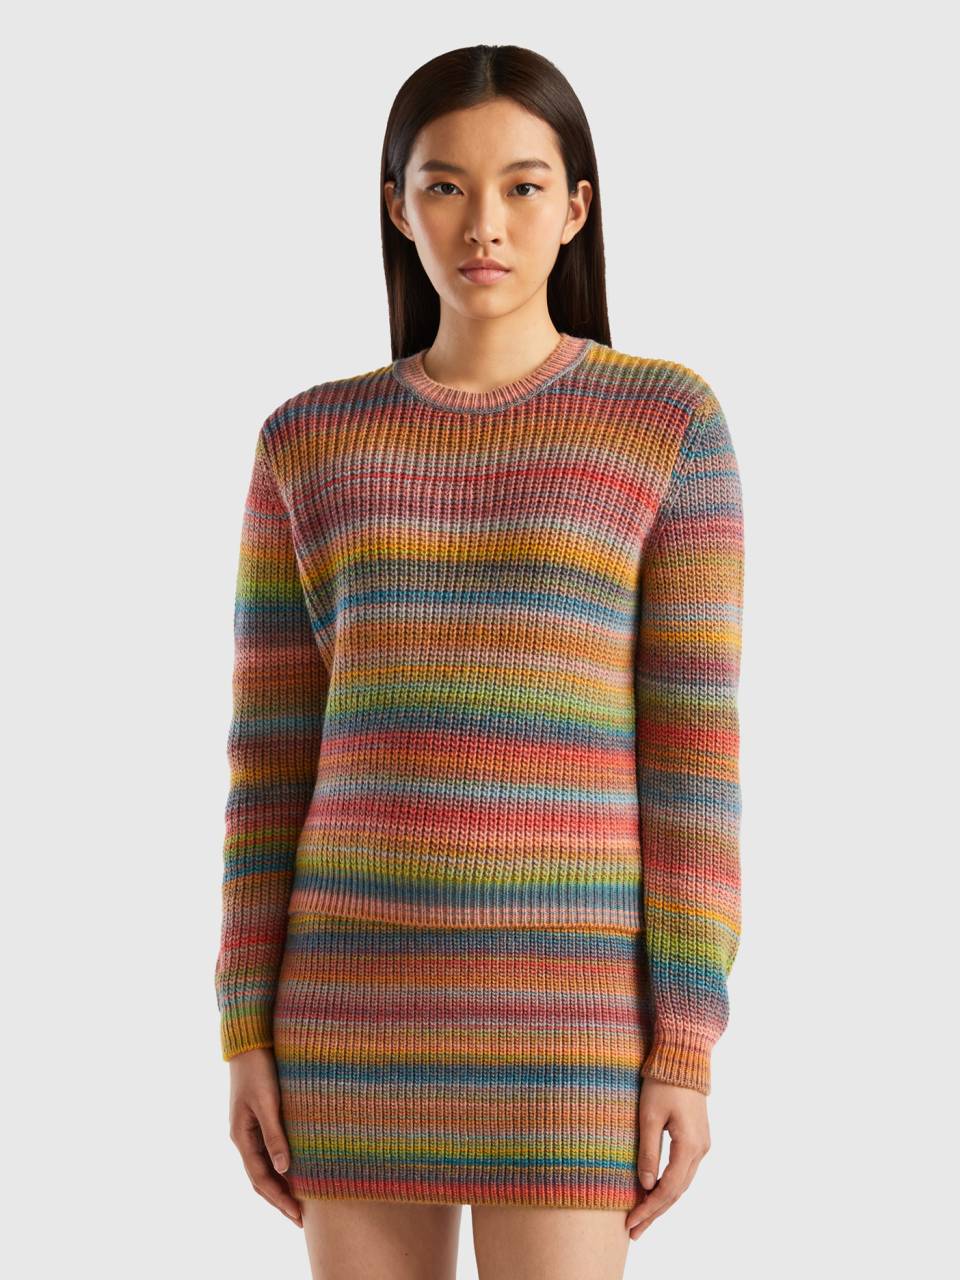 Multicolor striped sweater - Multi-color | Benetton